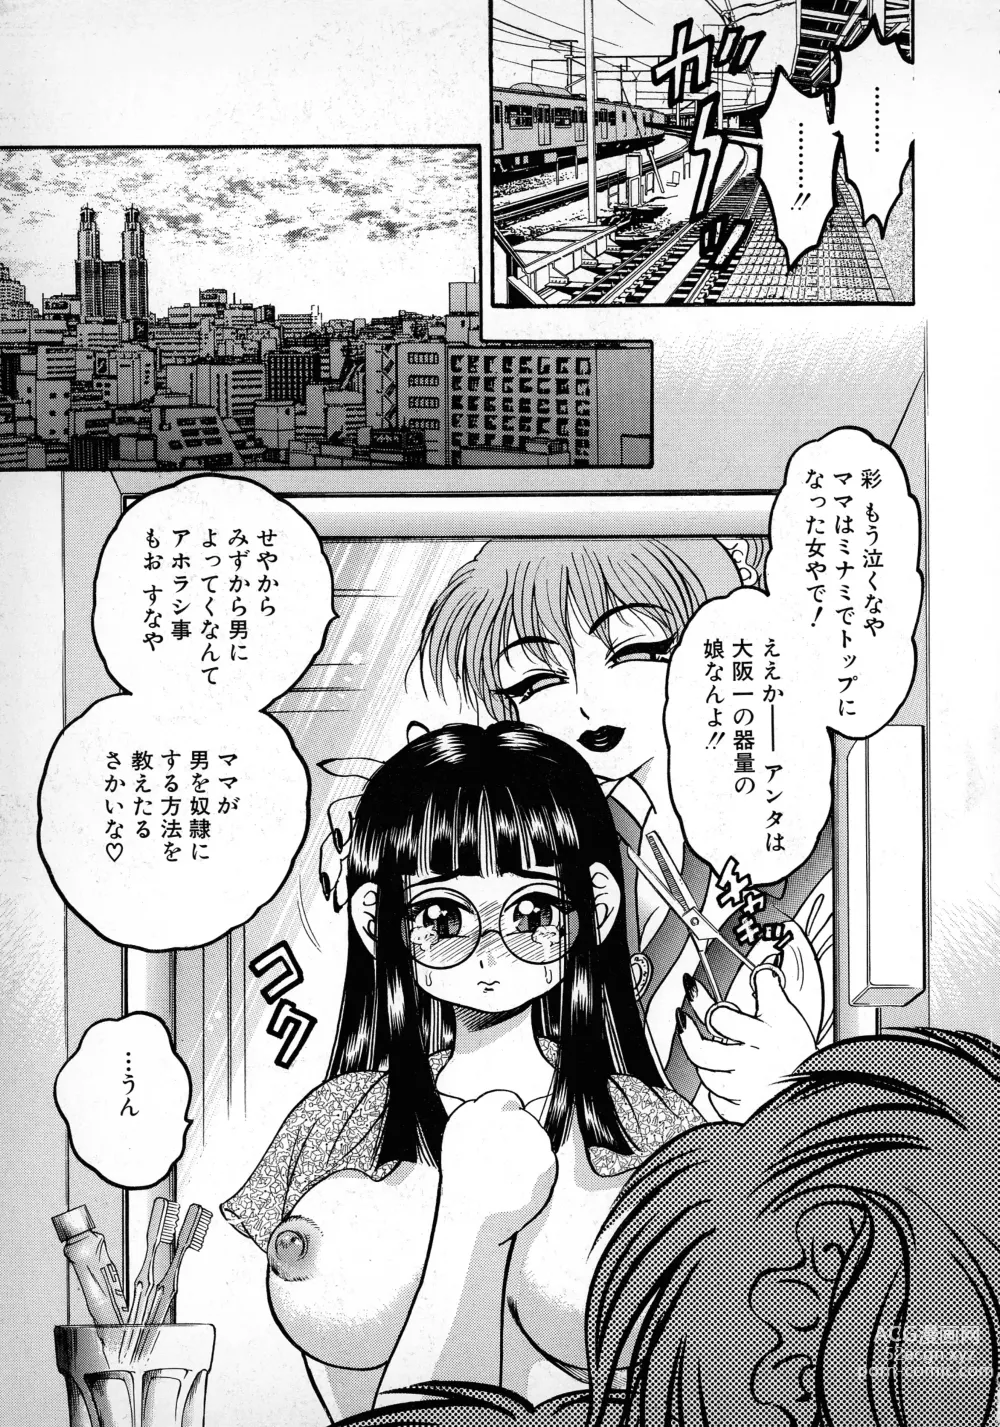 Page 7 of manga Banana Kajuu